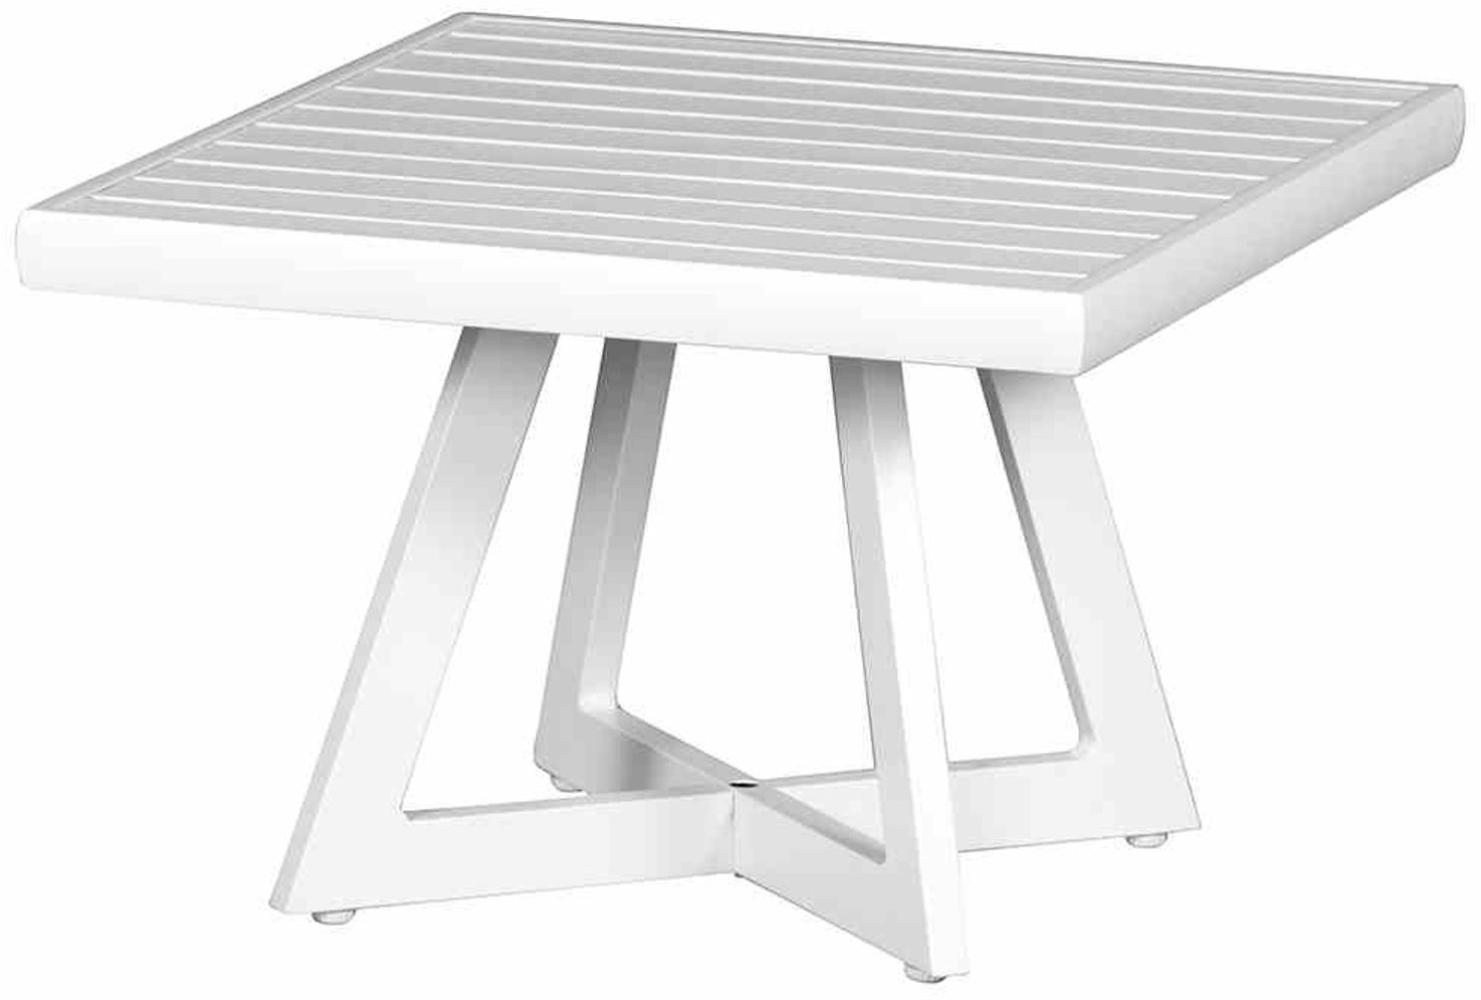 Alexis Lounge Tisch 50x50 Aluminium matt-weiß Gartentisch Tresentisch Bartisch Bild 1